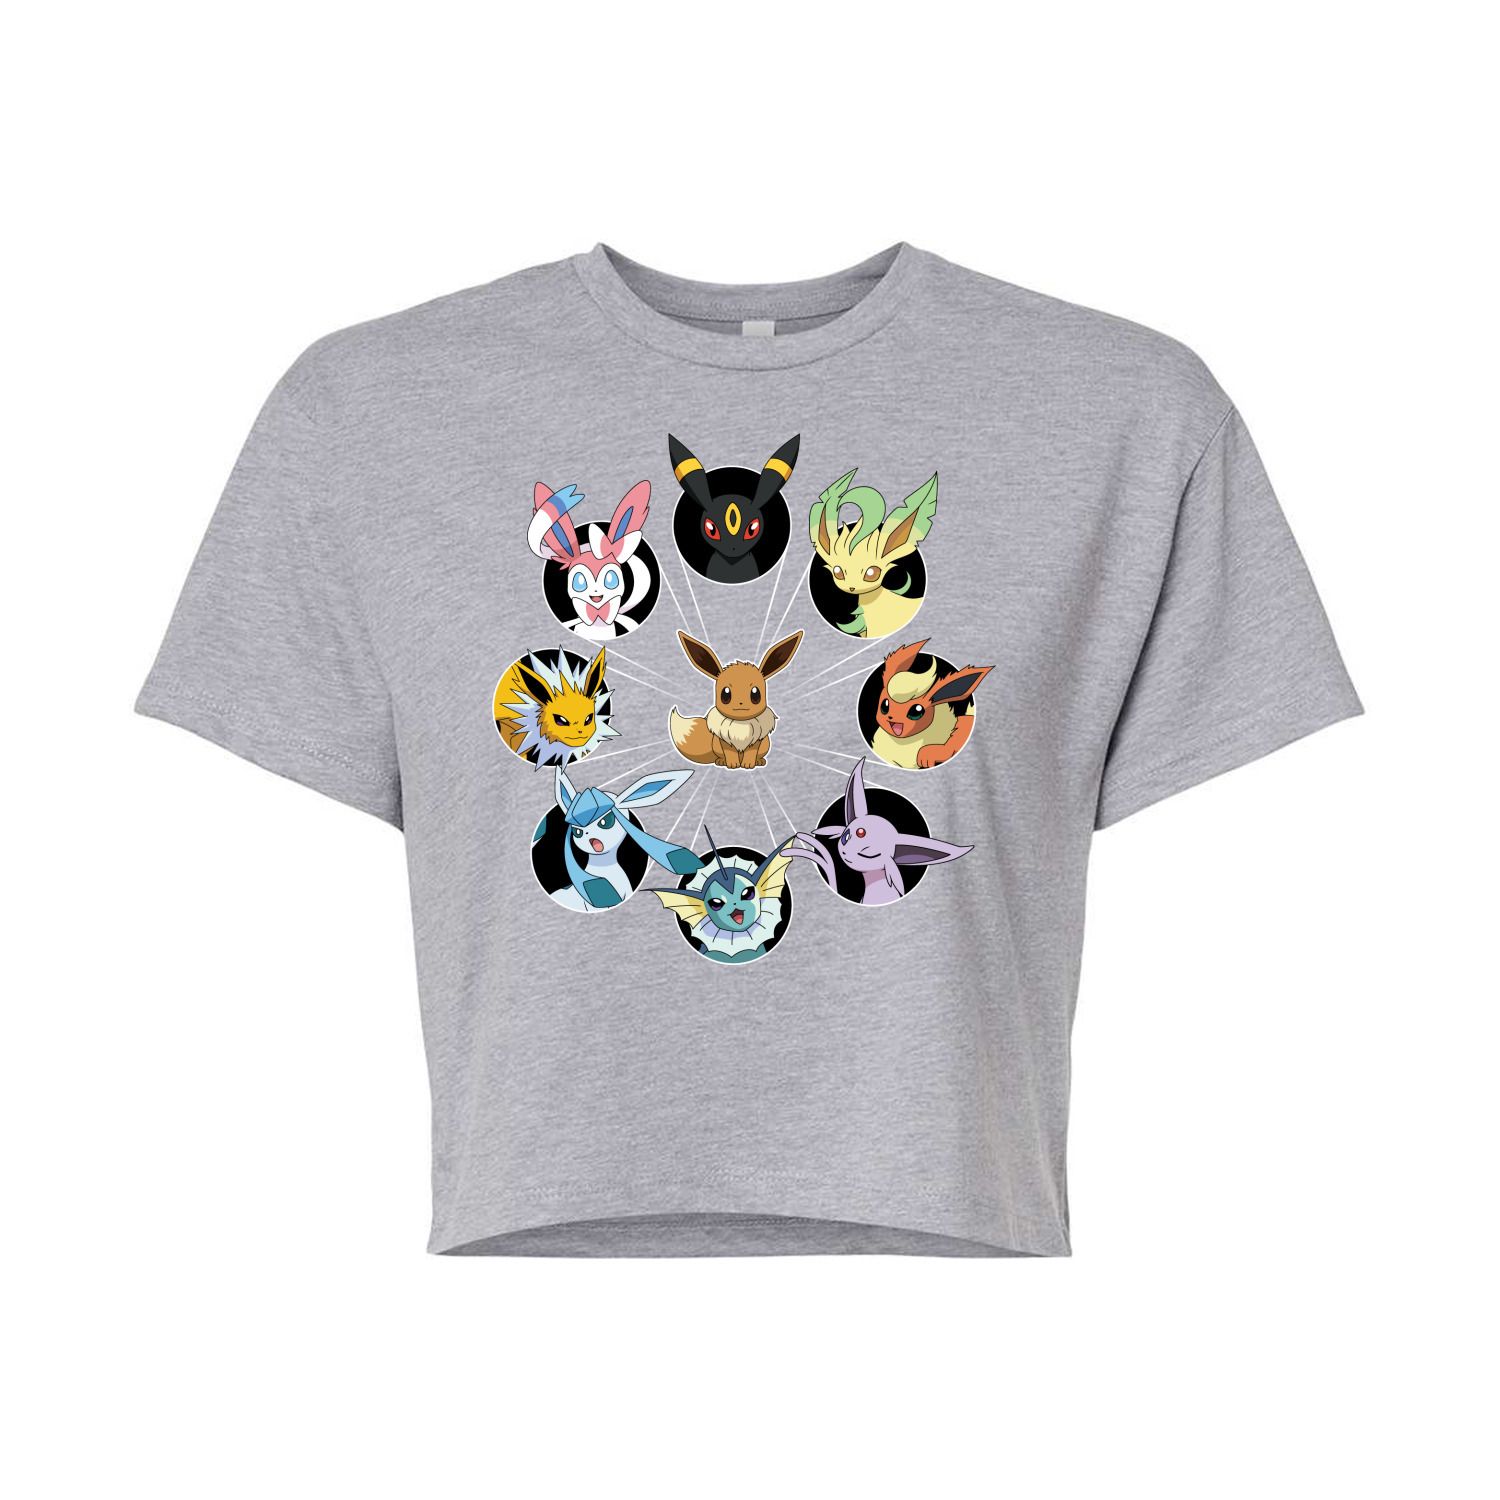 Укороченная футболка с рисунком Pokémon Eevee Evolution для юниоров Licensed Character